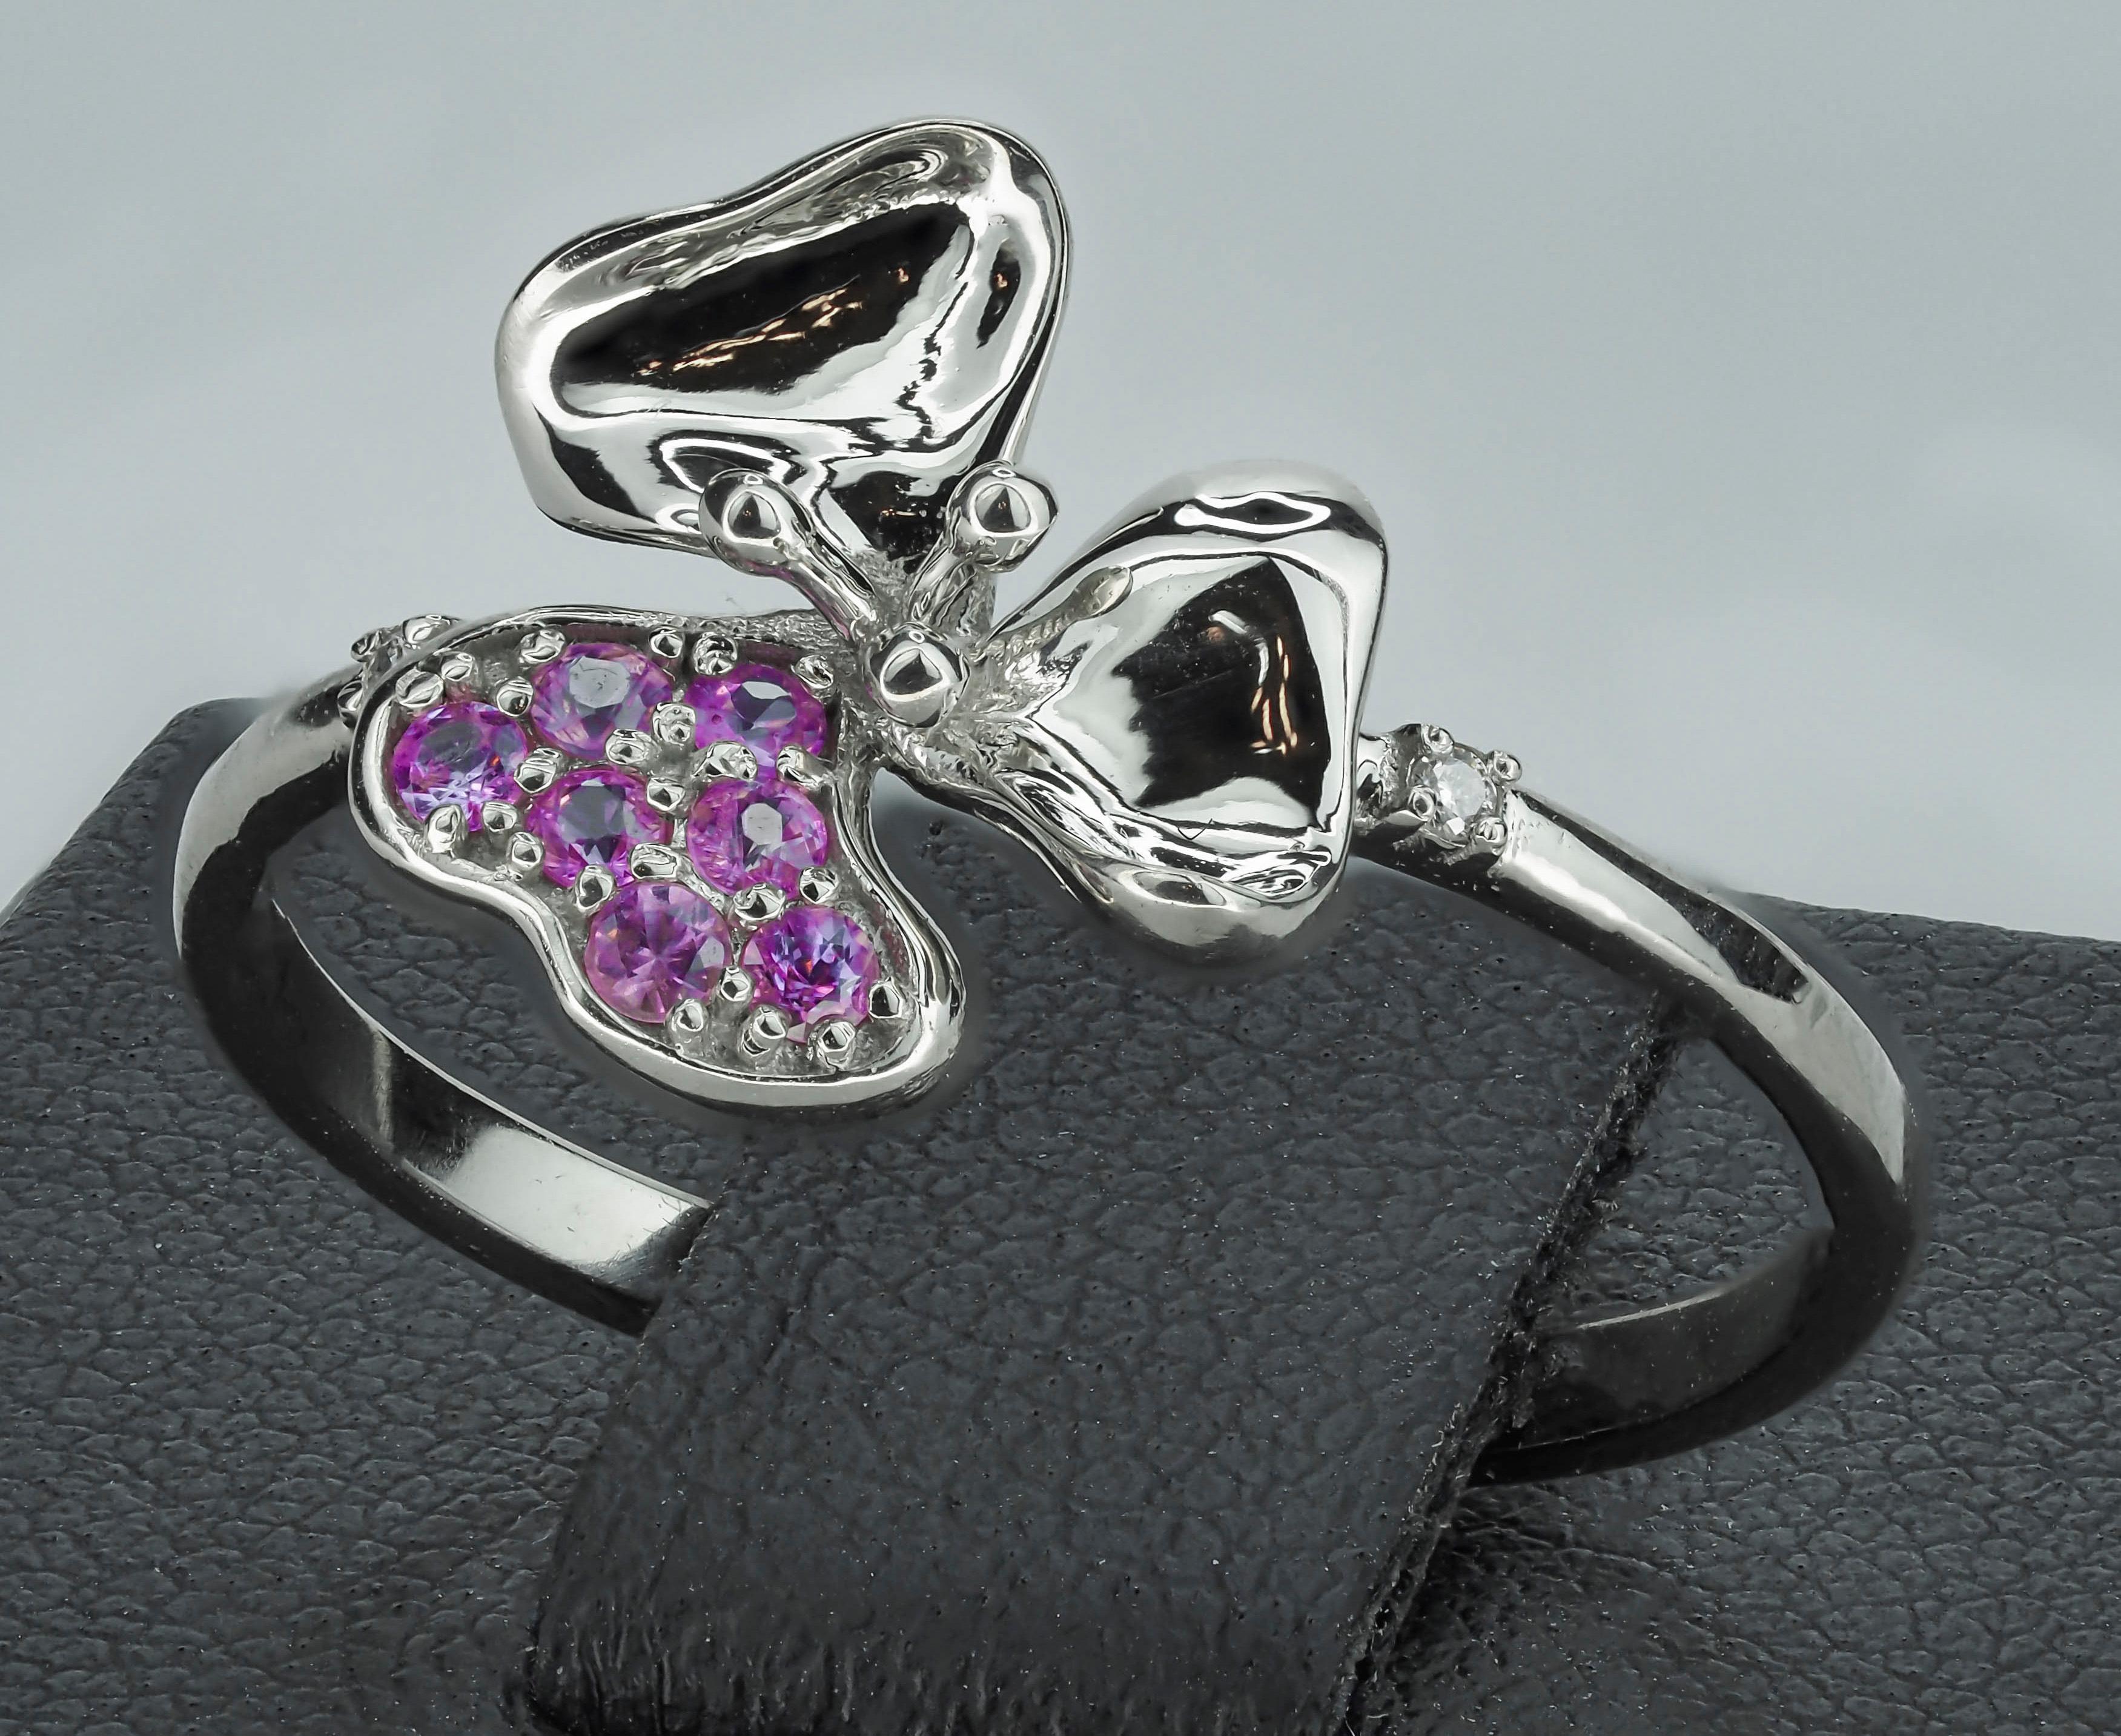 For Sale:  3 petal Flower 14k ring with gemstones. 7